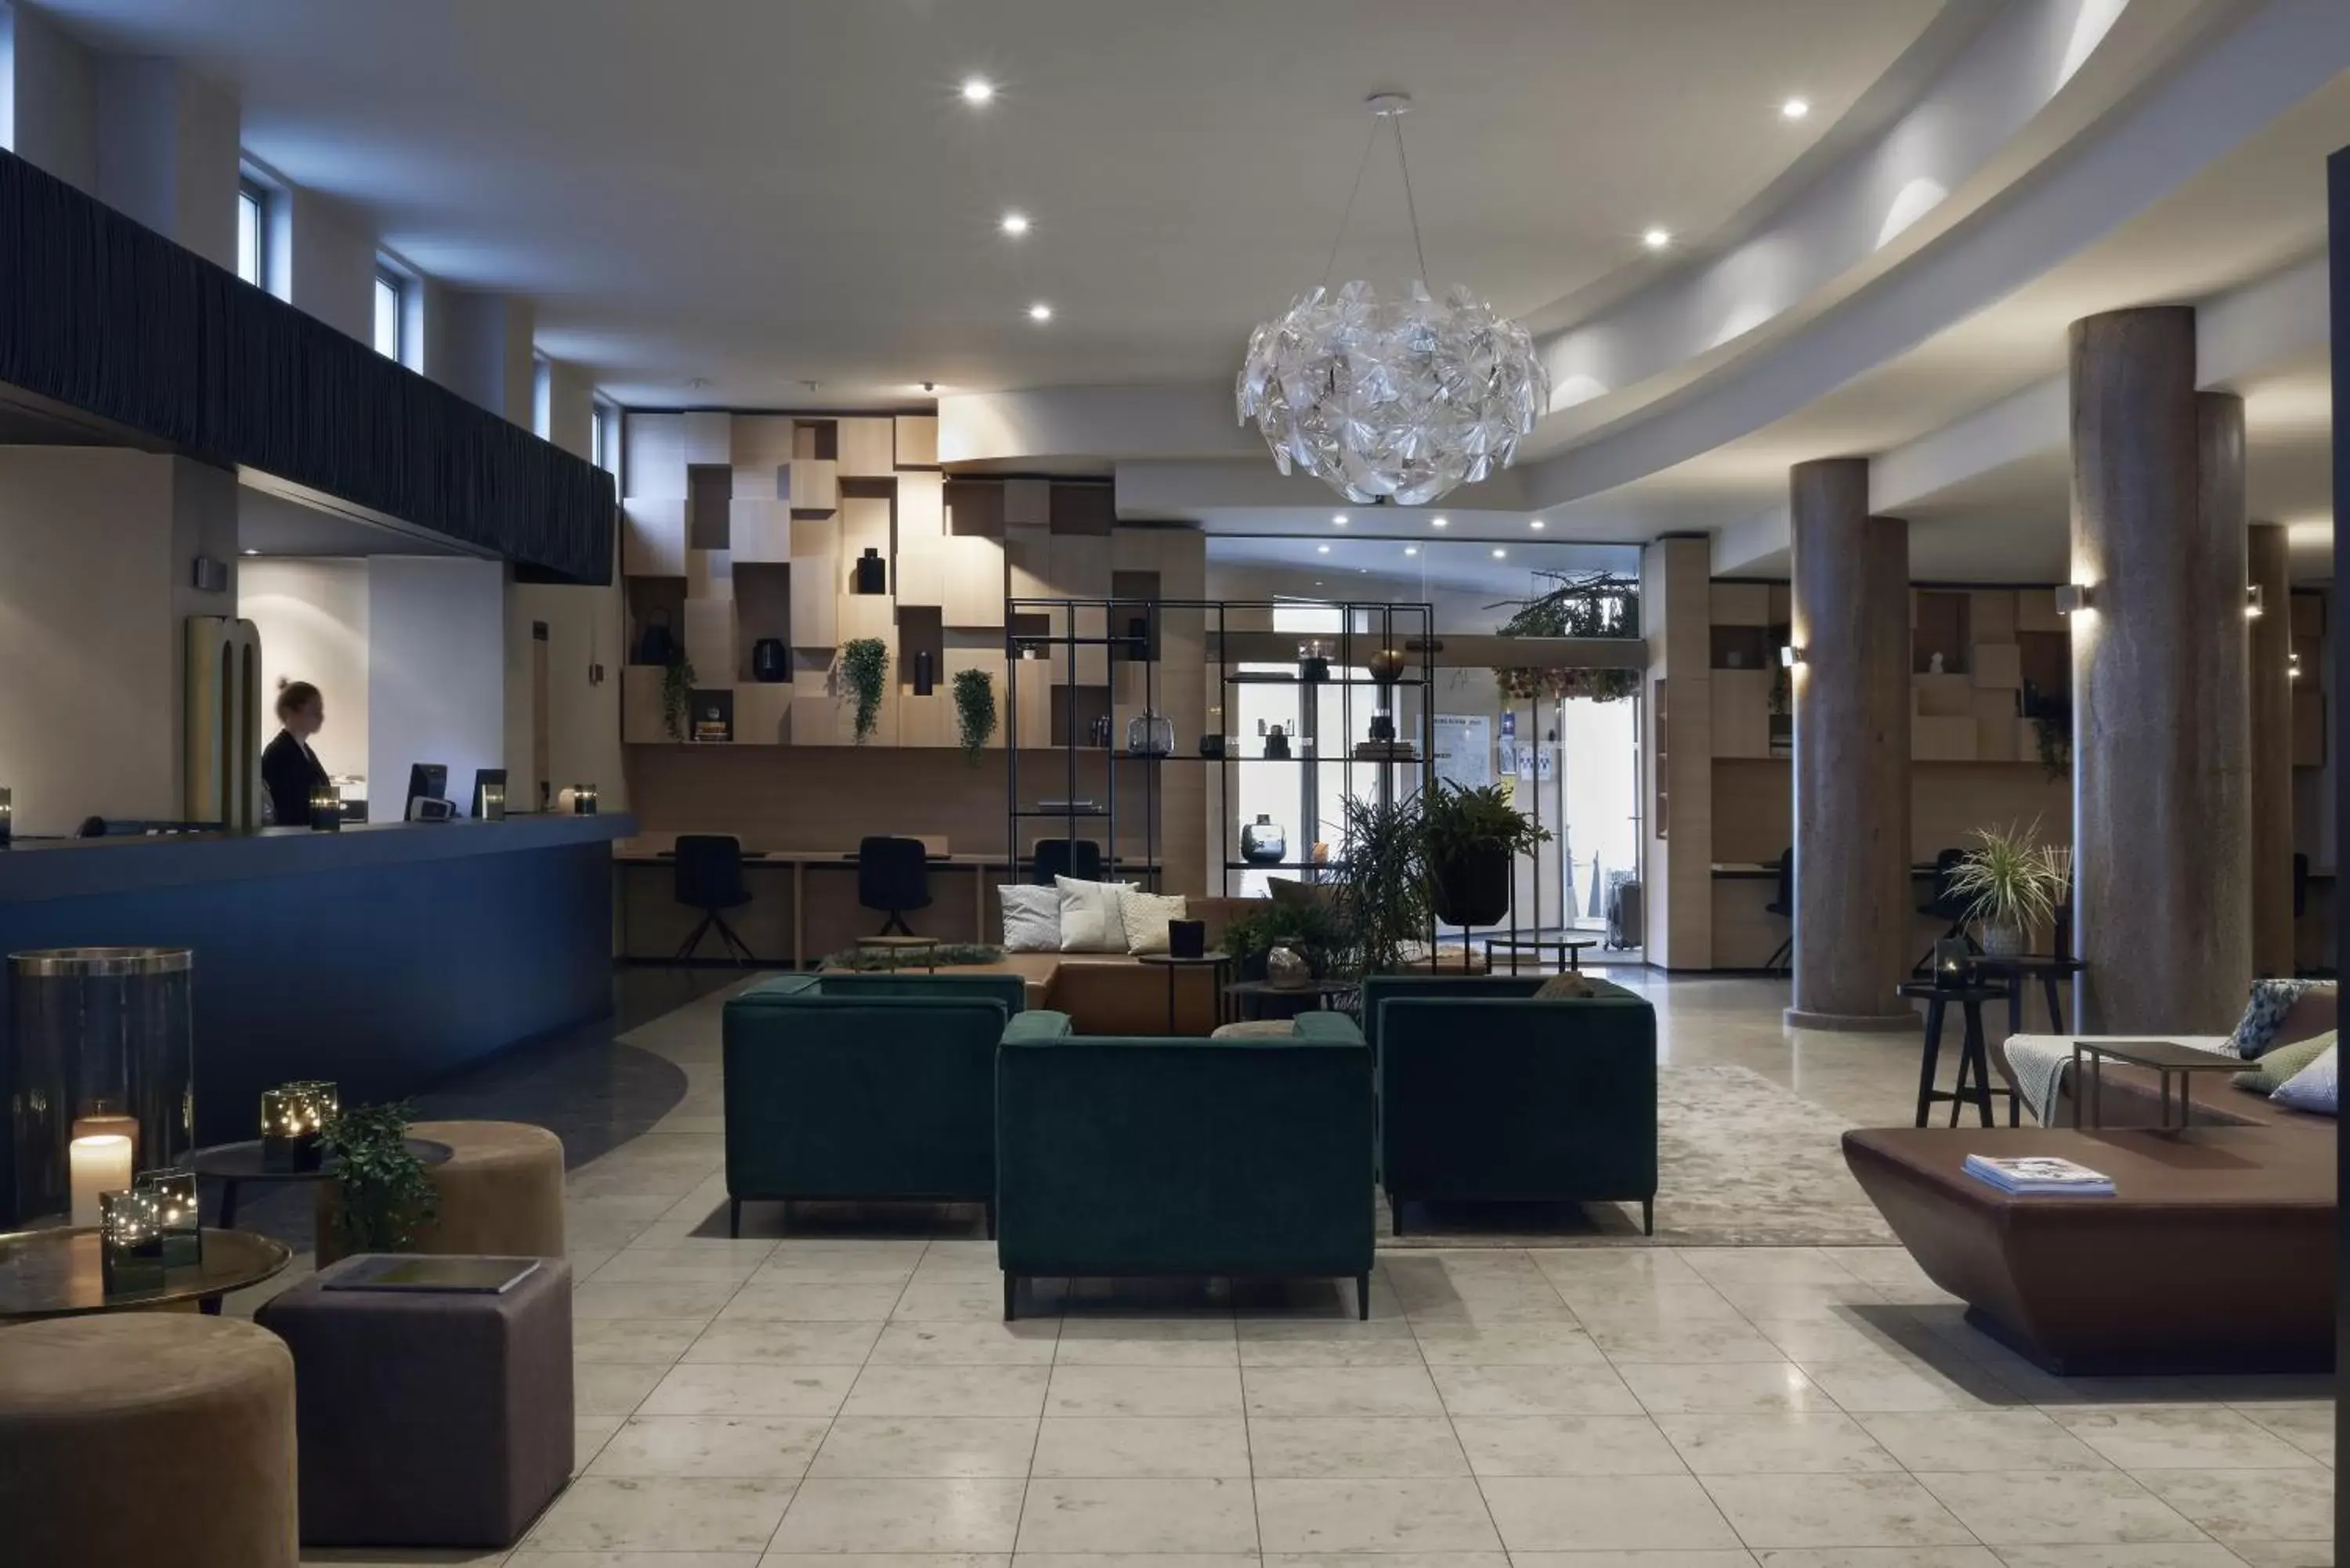 Lobby or reception, Lobby/Reception in M Hotel